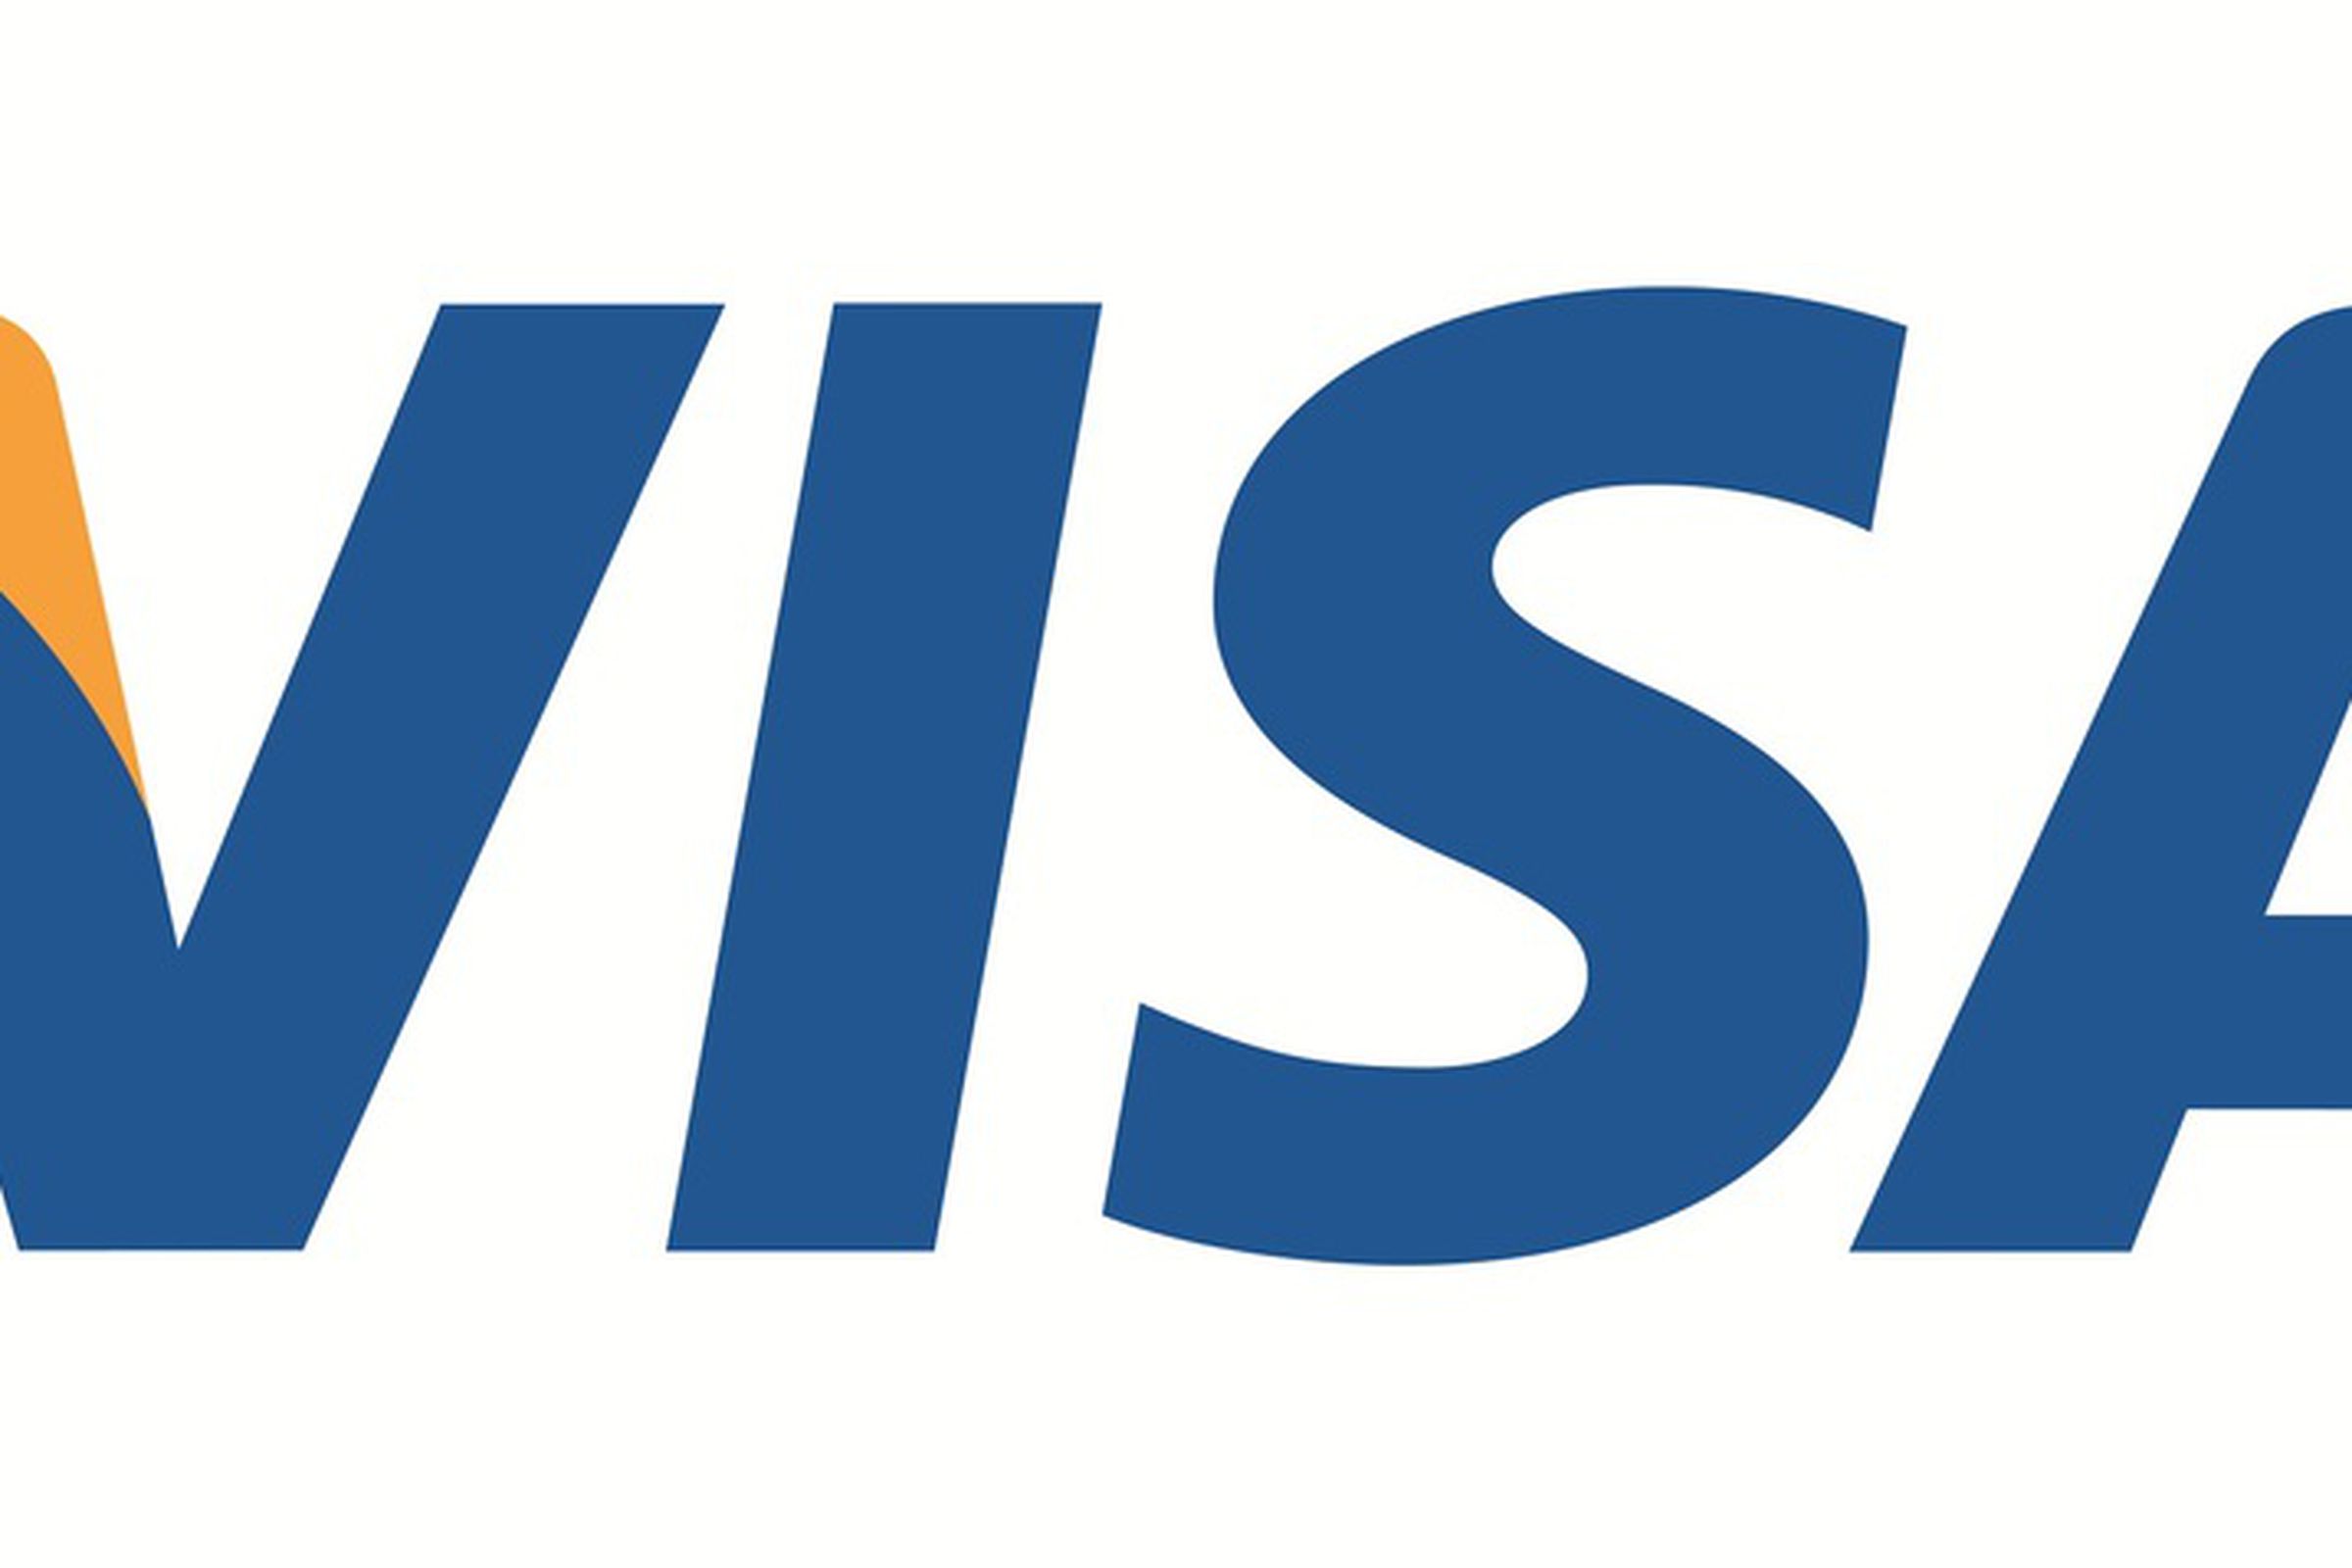 Visa logo 